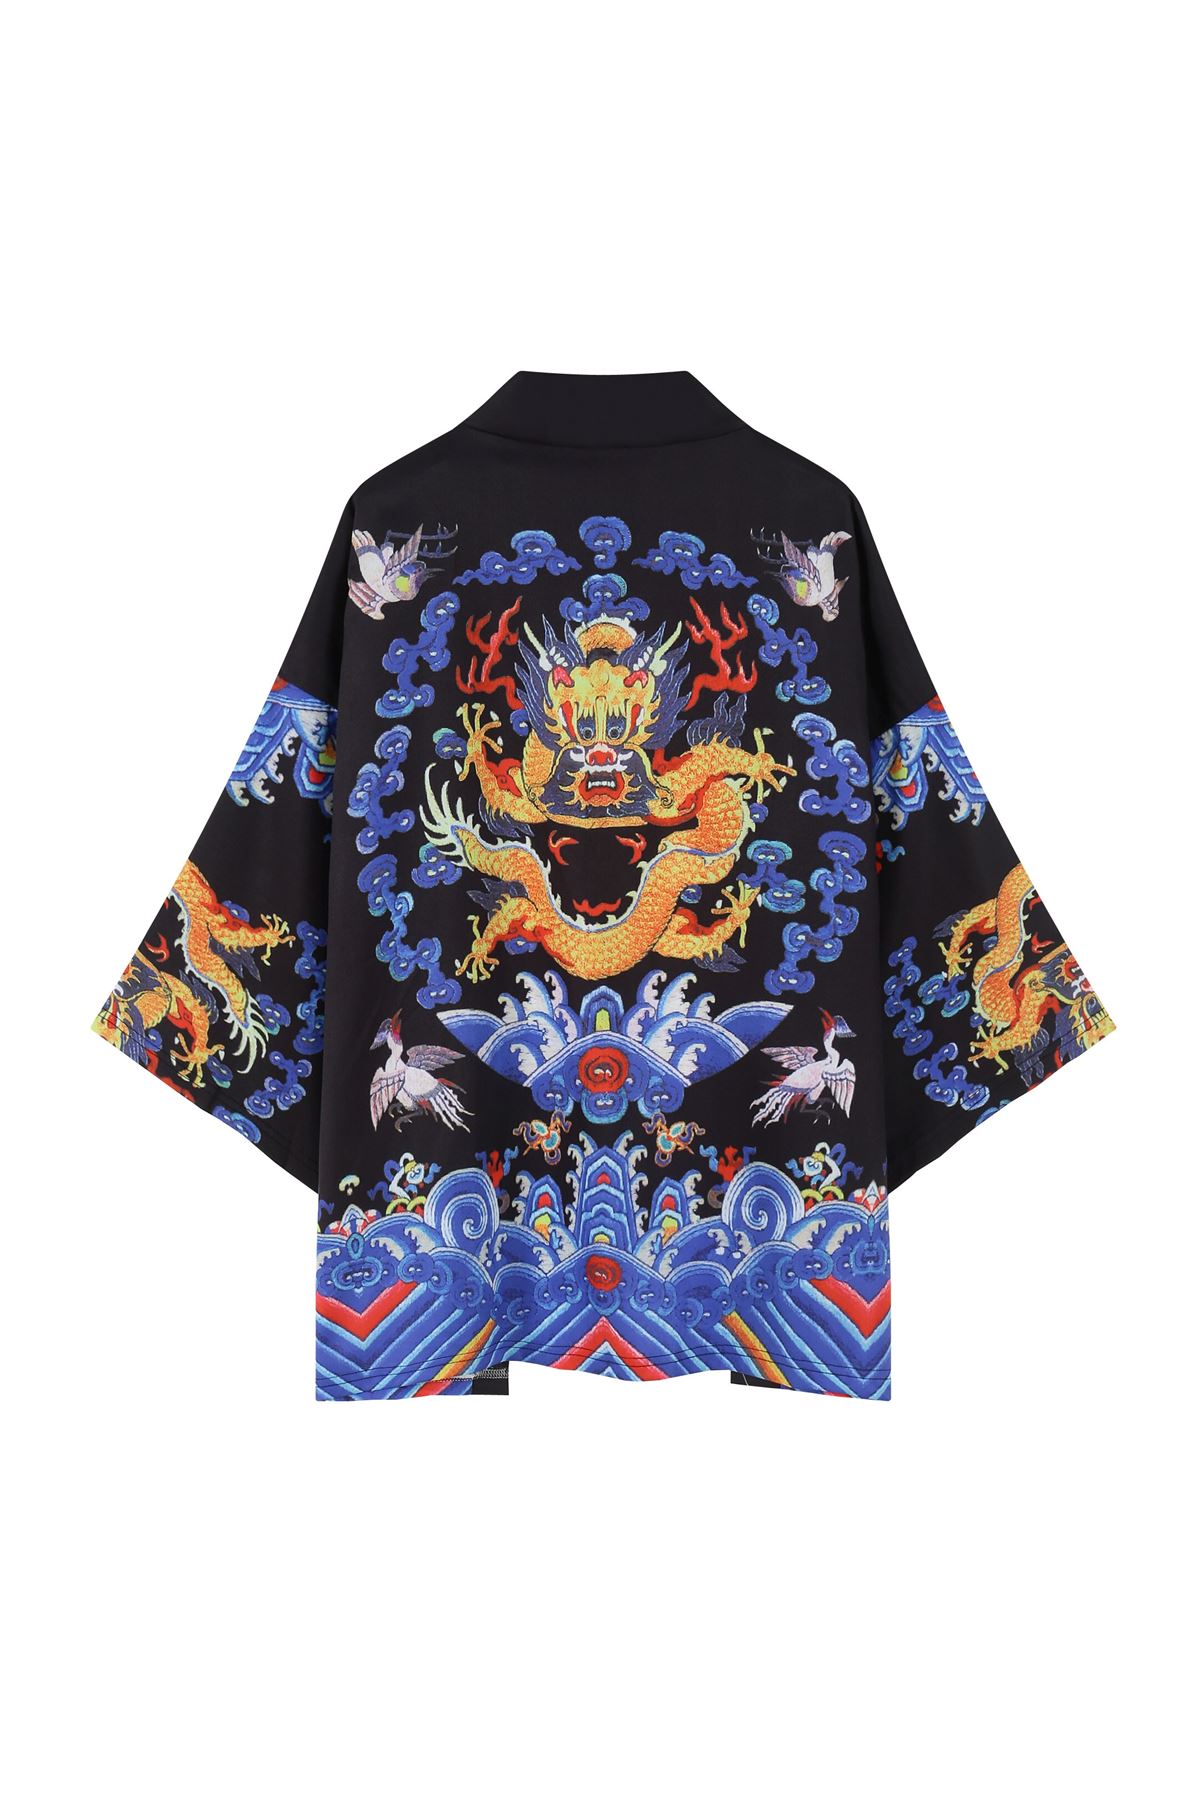 Japon Kadın/Erkek/Unisex/Oversize Siyah/Bej/Kırmızı Kimono-Siyah 1015